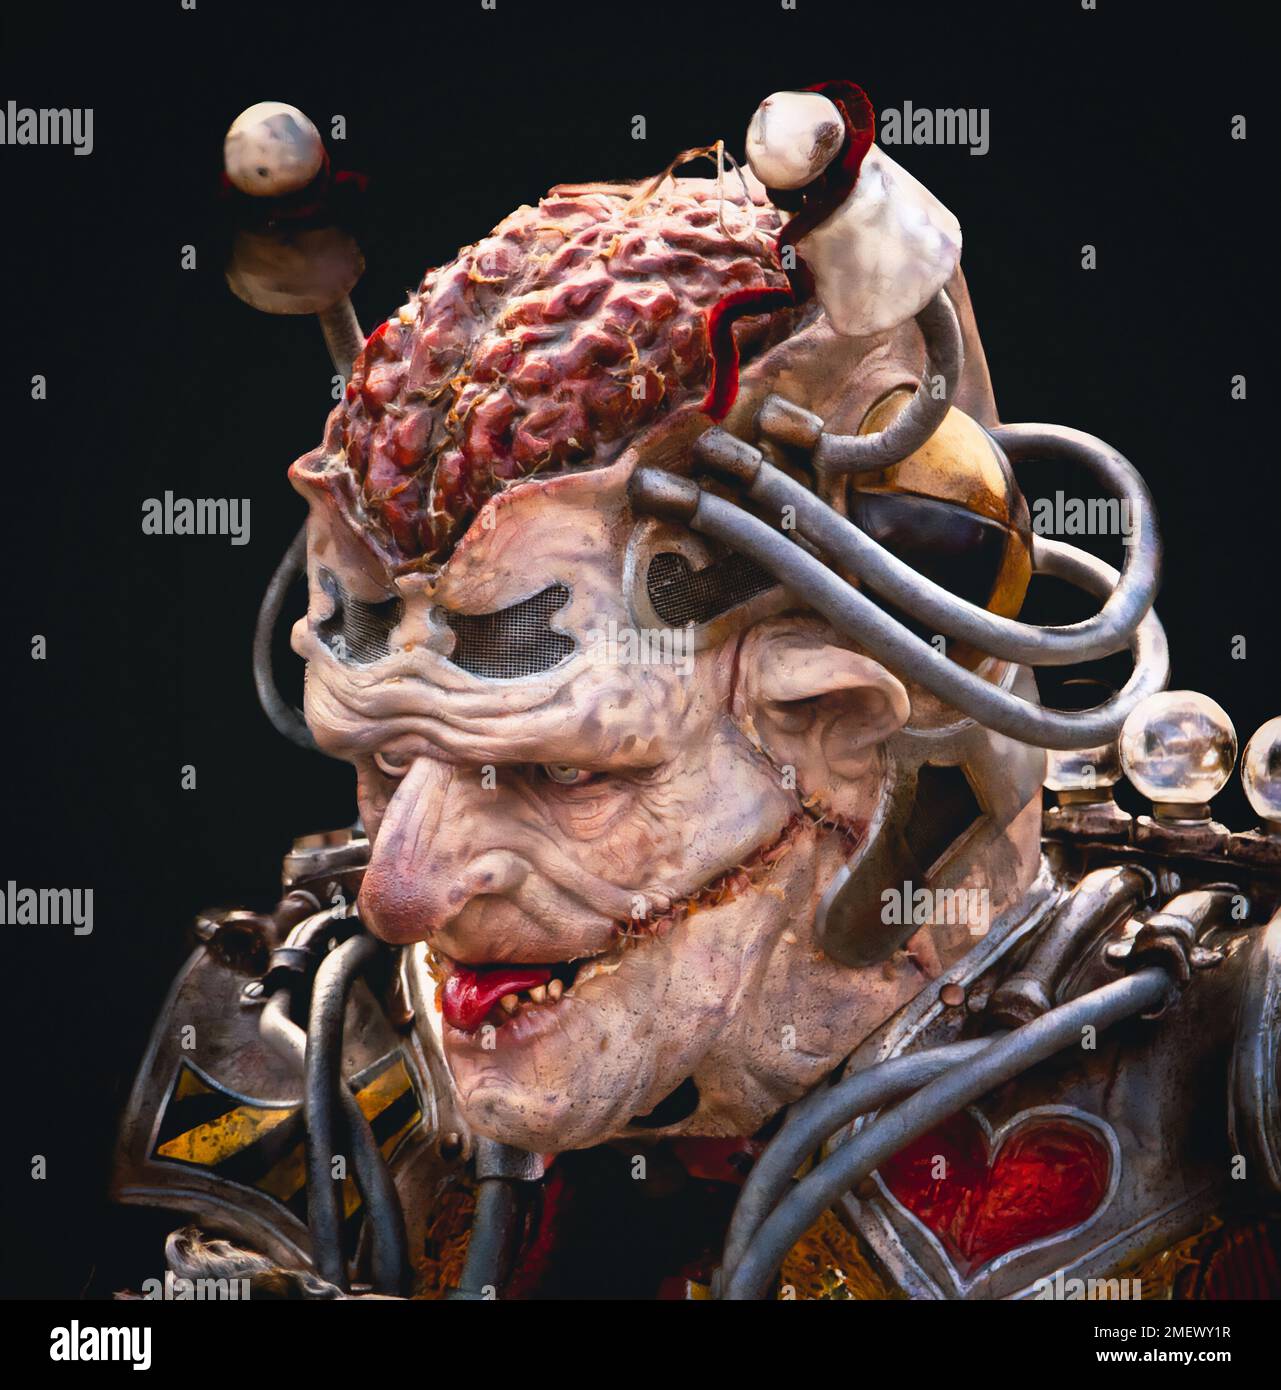 Nahaufnahme eines gruselig aussehenden Außerirdischen oder Mutanten mit seinem Gehirn und einem Narbengesicht in futuristischer Kleidung. Stockfoto